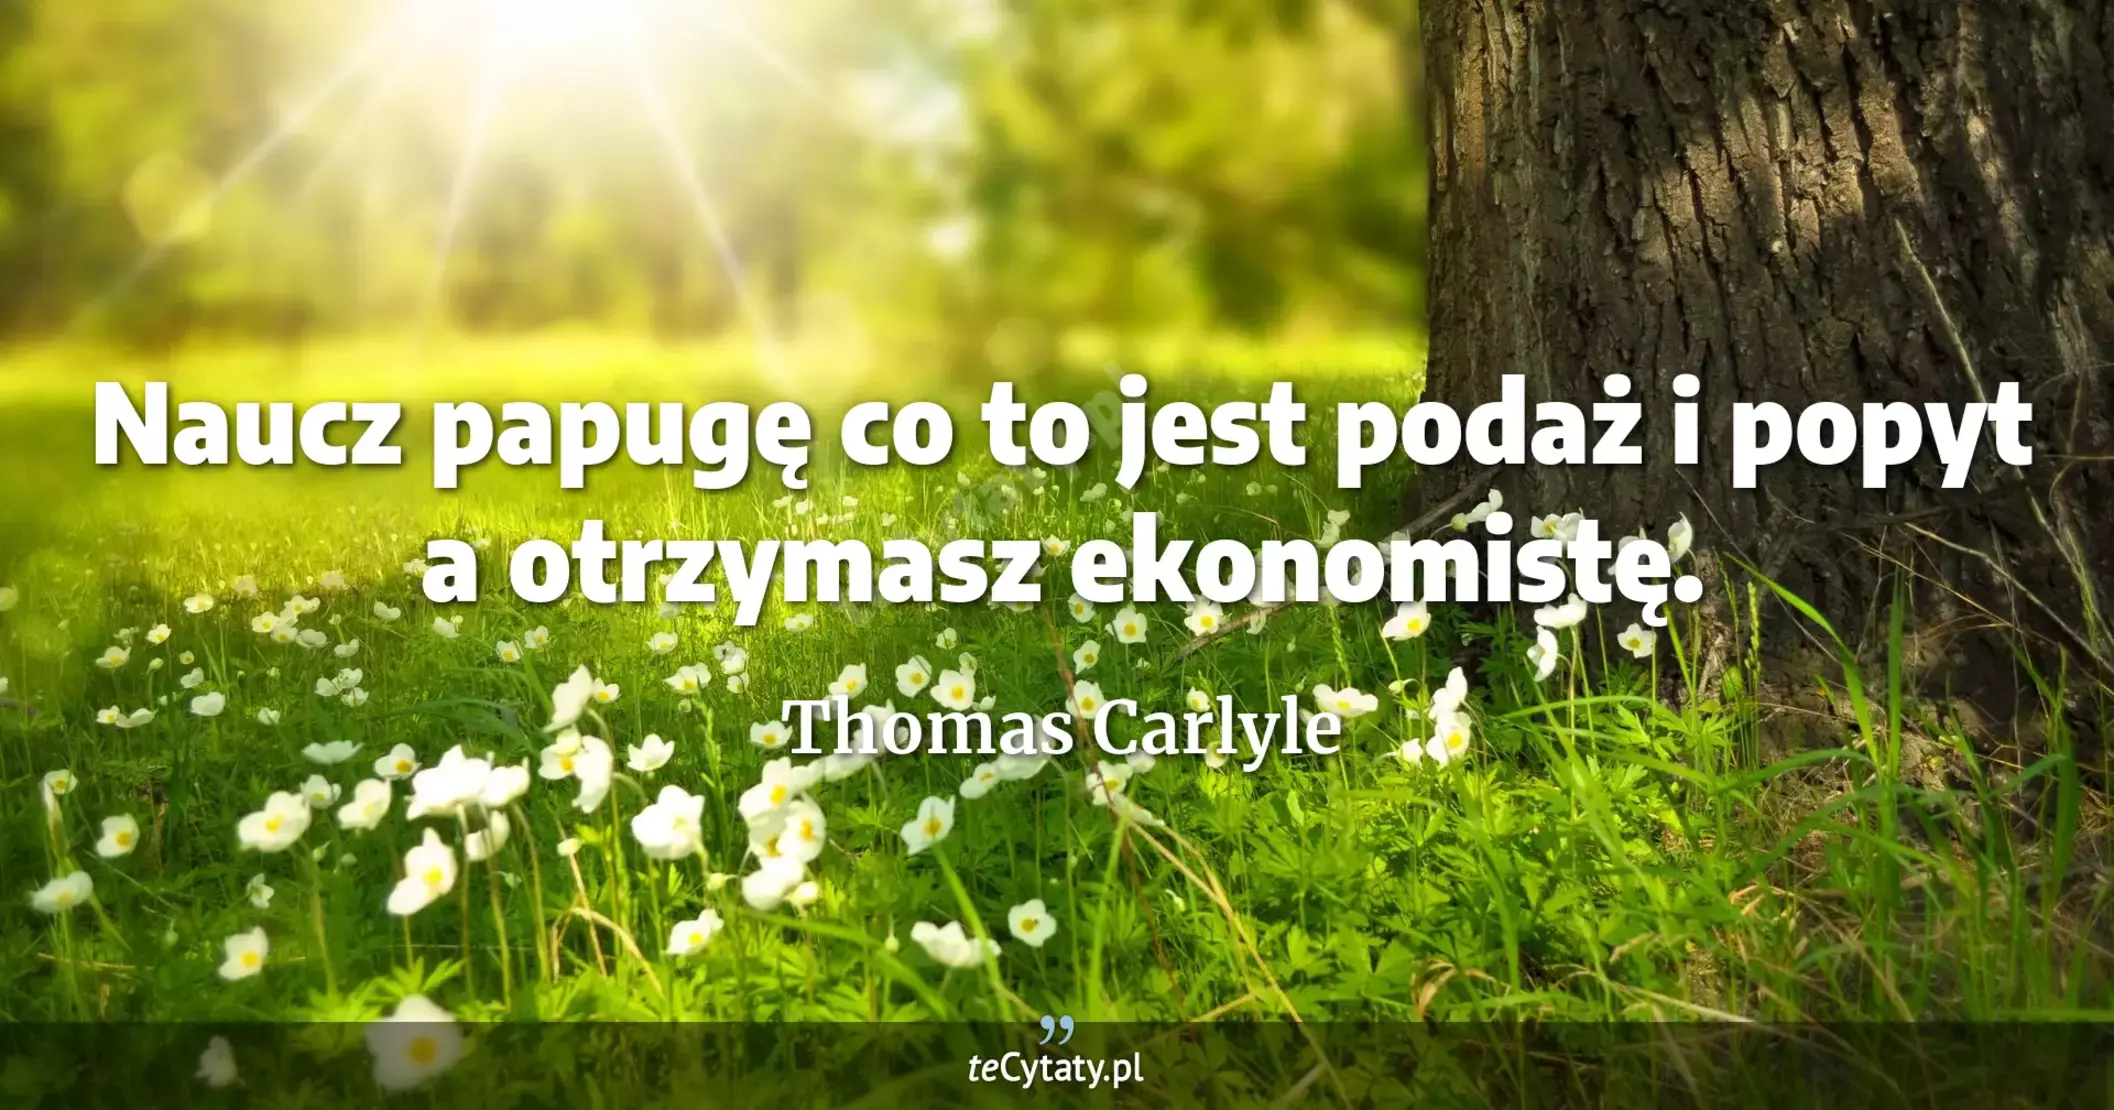 Naucz papugę co to jest podaż i popyt a otrzymasz ekonomistę. - Thomas Carlyle